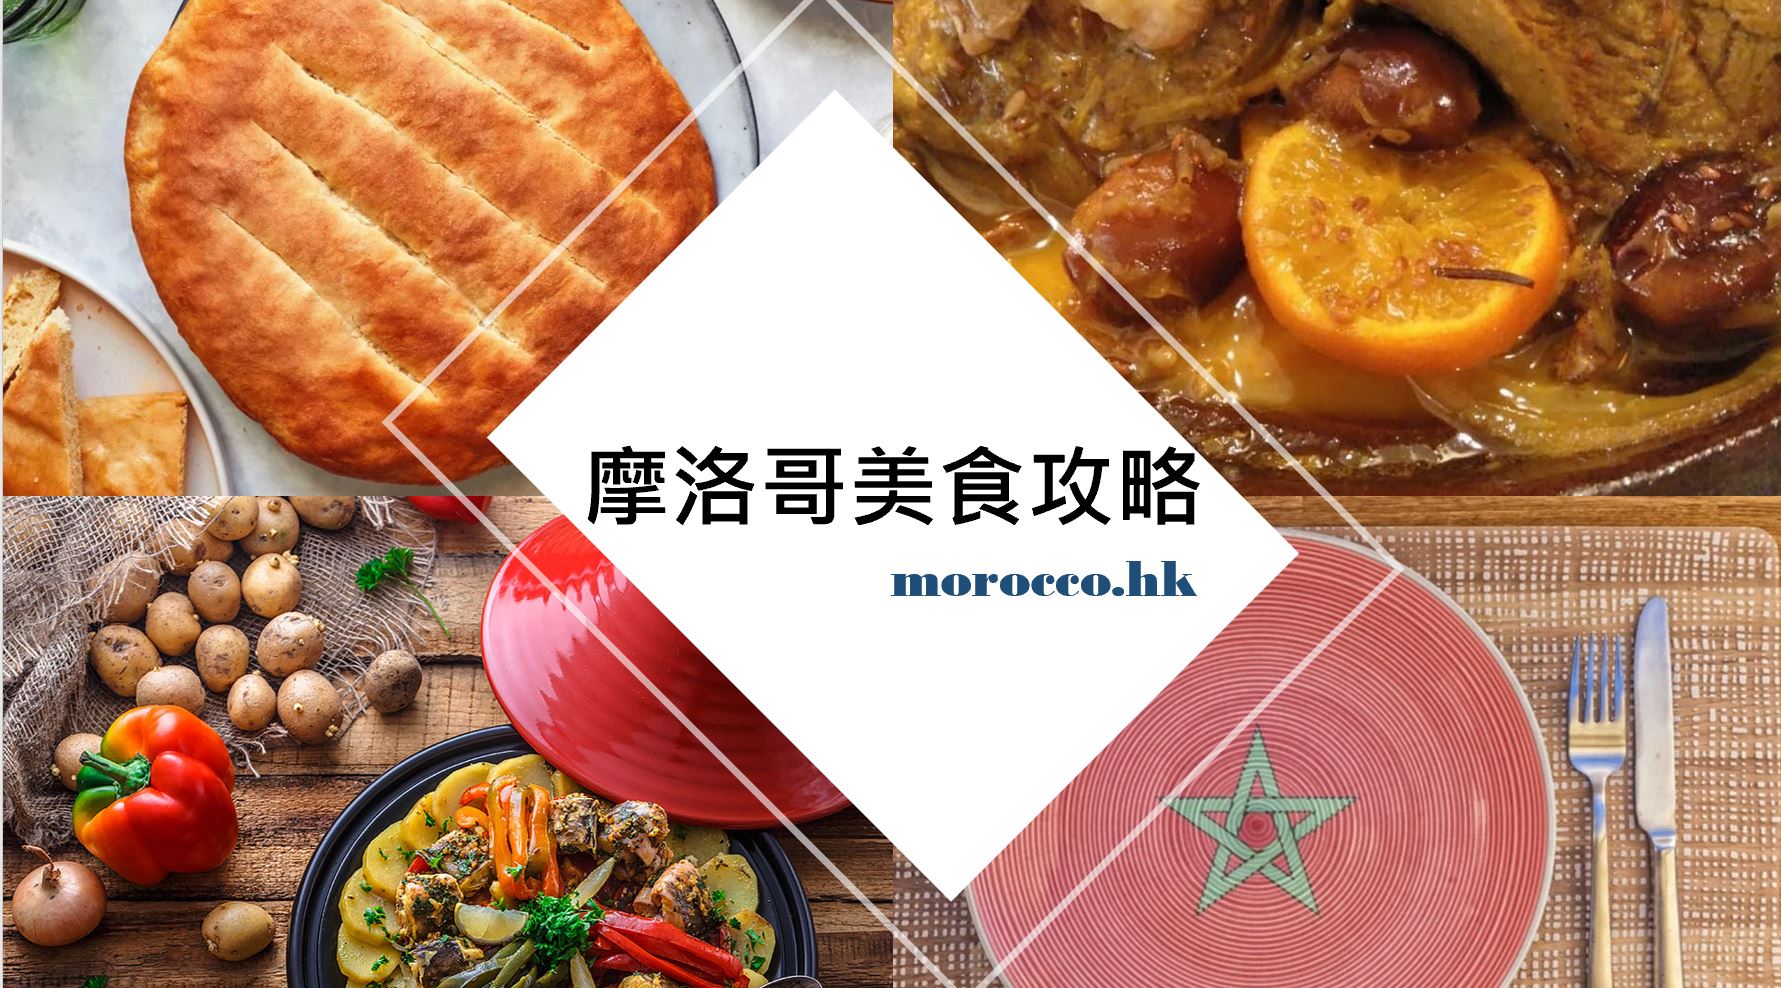 摩洛哥美食_Moroccan_food